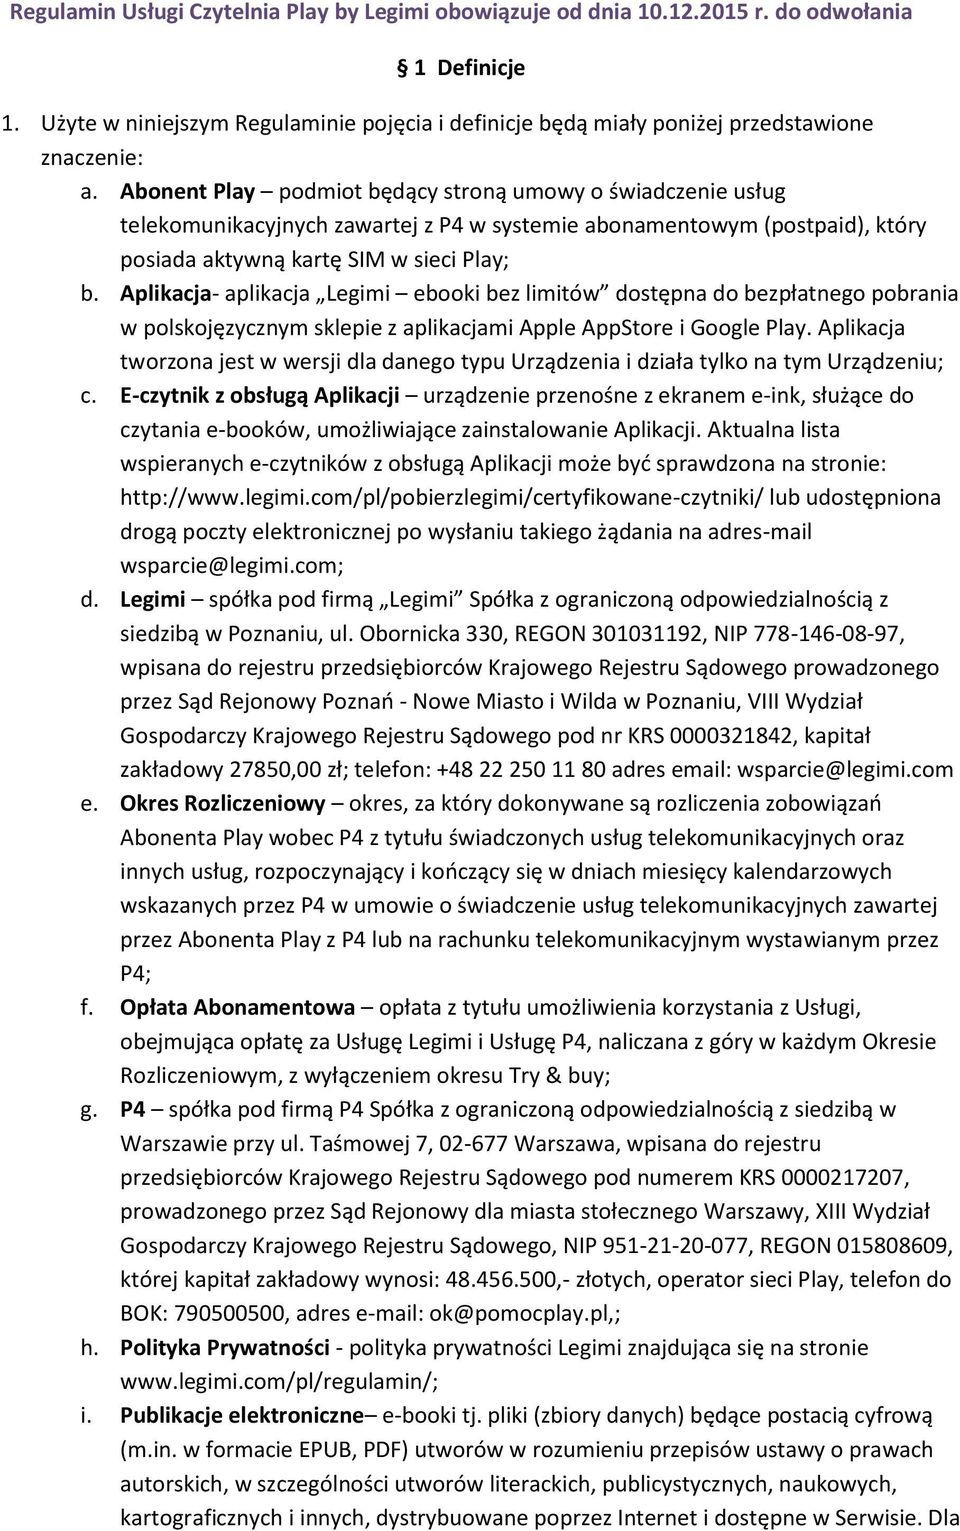 Aplikacja- aplikacja Legimi ebooki bez limitów dostępna do bezpłatnego pobrania w polskojęzycznym sklepie z aplikacjami Apple AppStore i Google Play.